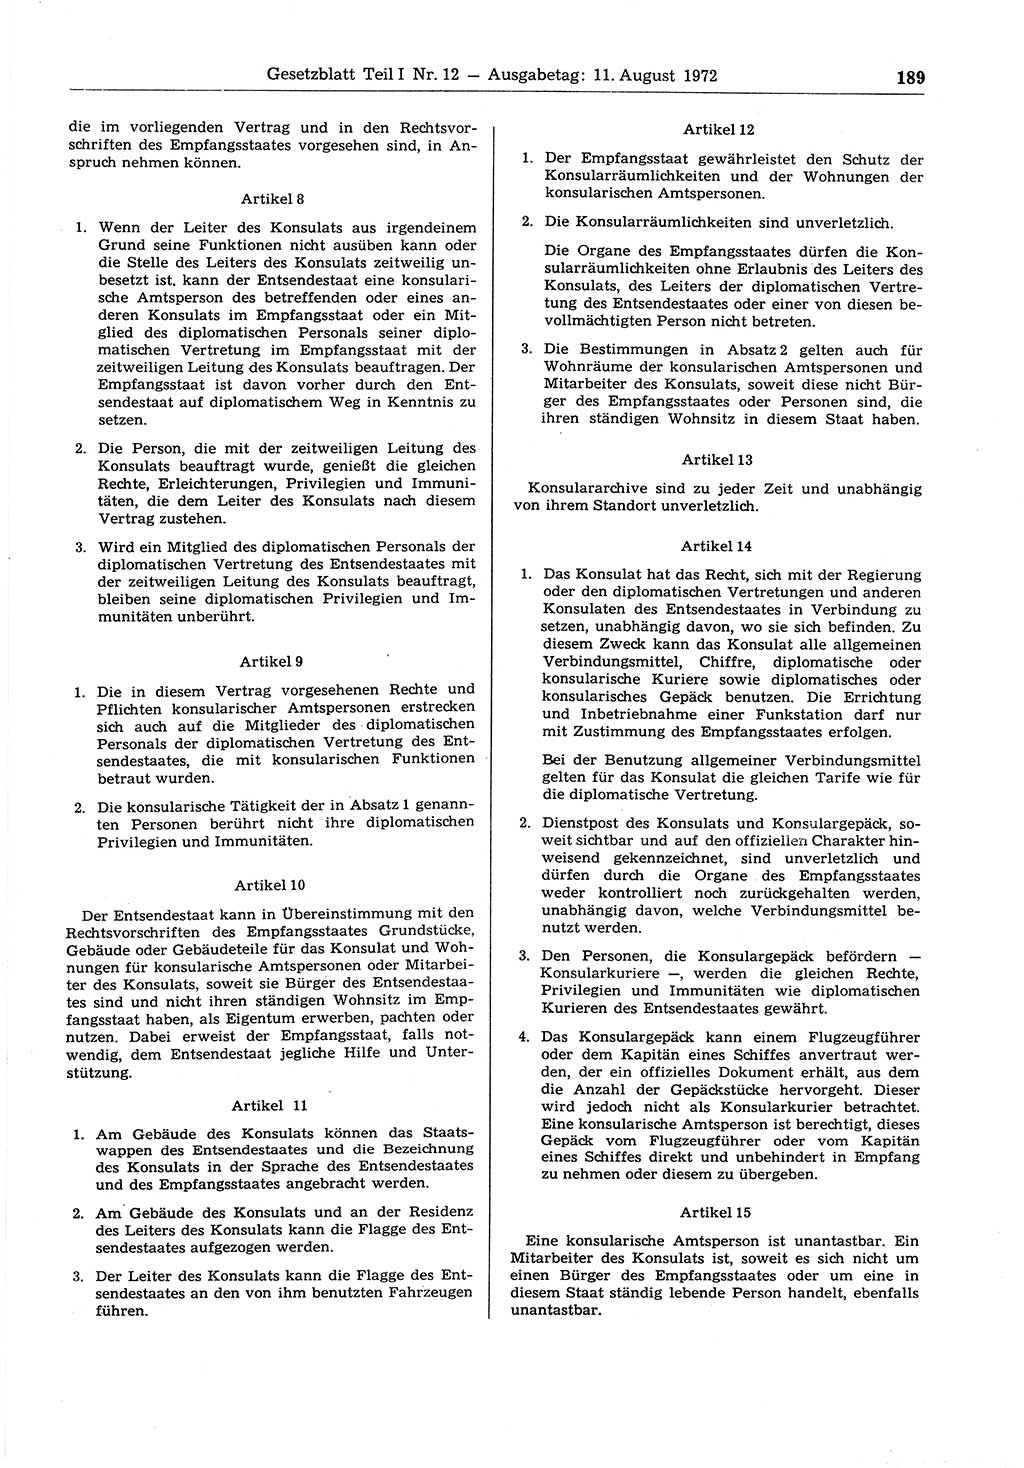 Gesetzblatt (GBl.) der Deutschen Demokratischen Republik (DDR) Teil Ⅰ 1972, Seite 189 (GBl. DDR Ⅰ 1972, S. 189)